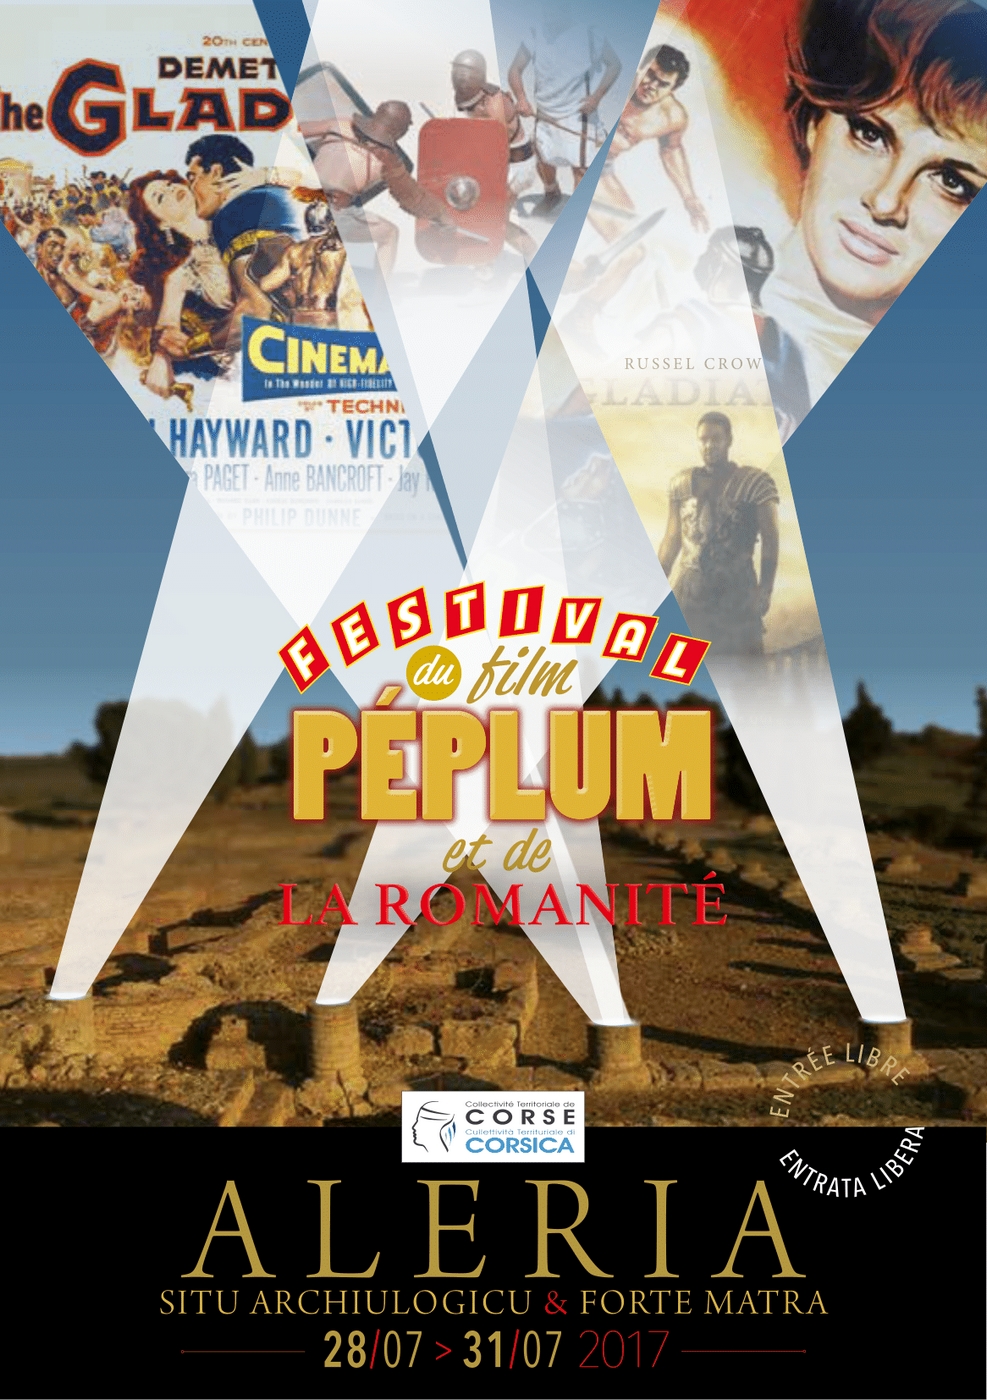 Affiche du Festival du film Péplum et de la Romanité - 2017